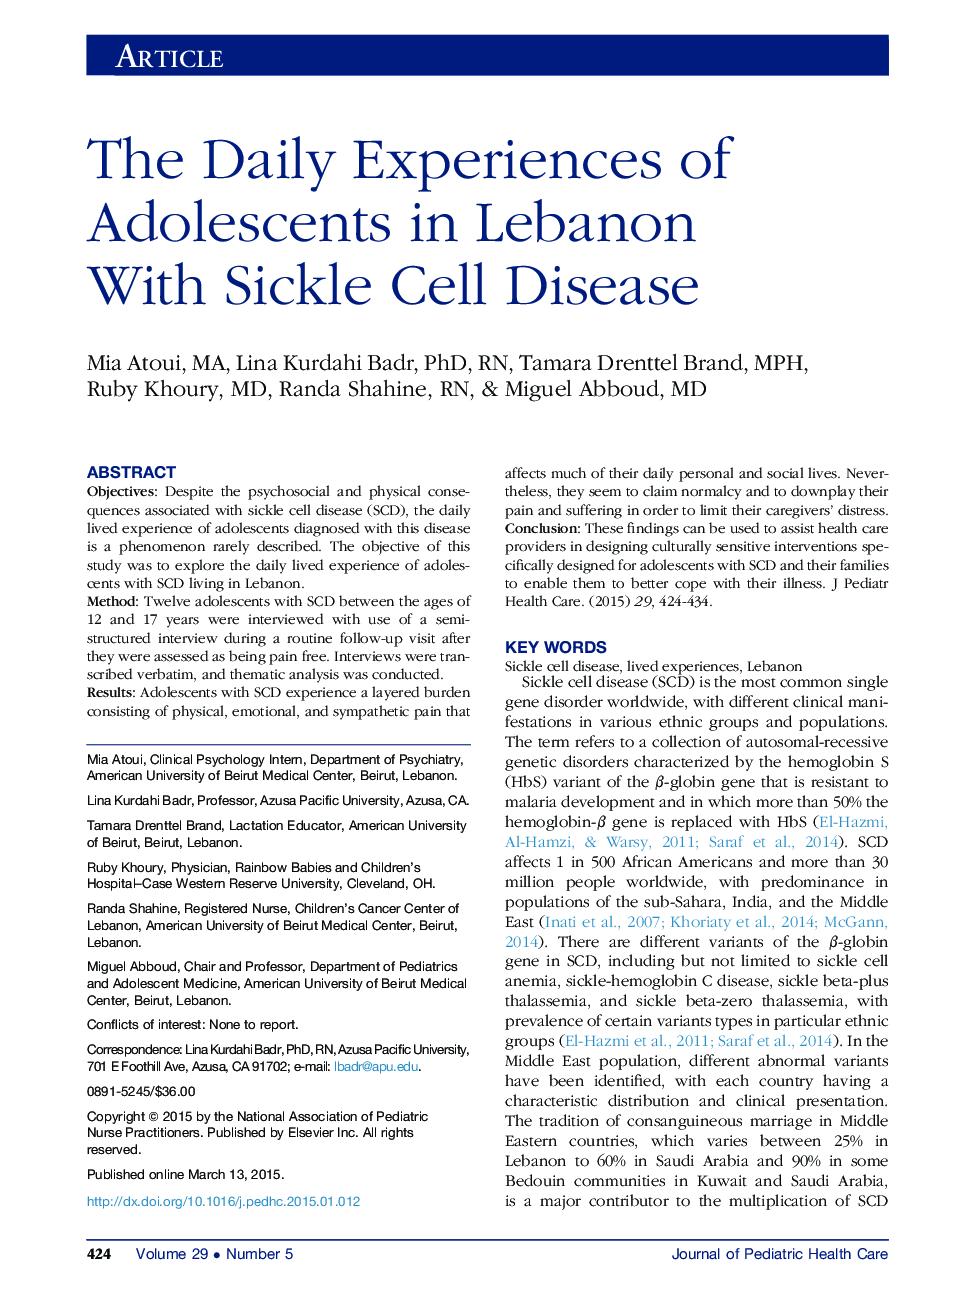 تجربیات روزانه نوجوانان در لبنان با بیماری سلولی سقط 